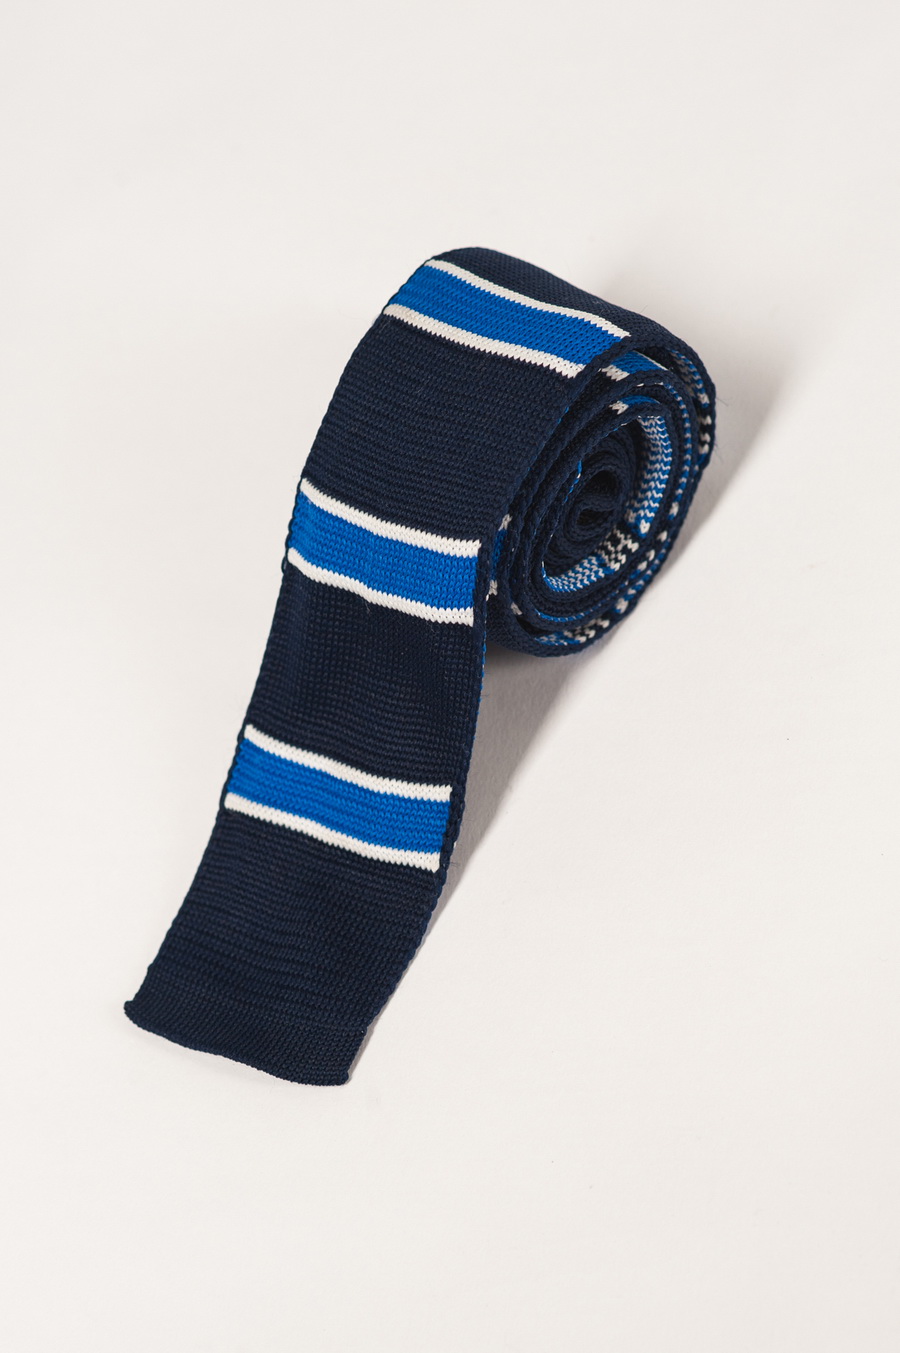 Вязанный галстук с горизонтальными полосками. Арт.:10-19